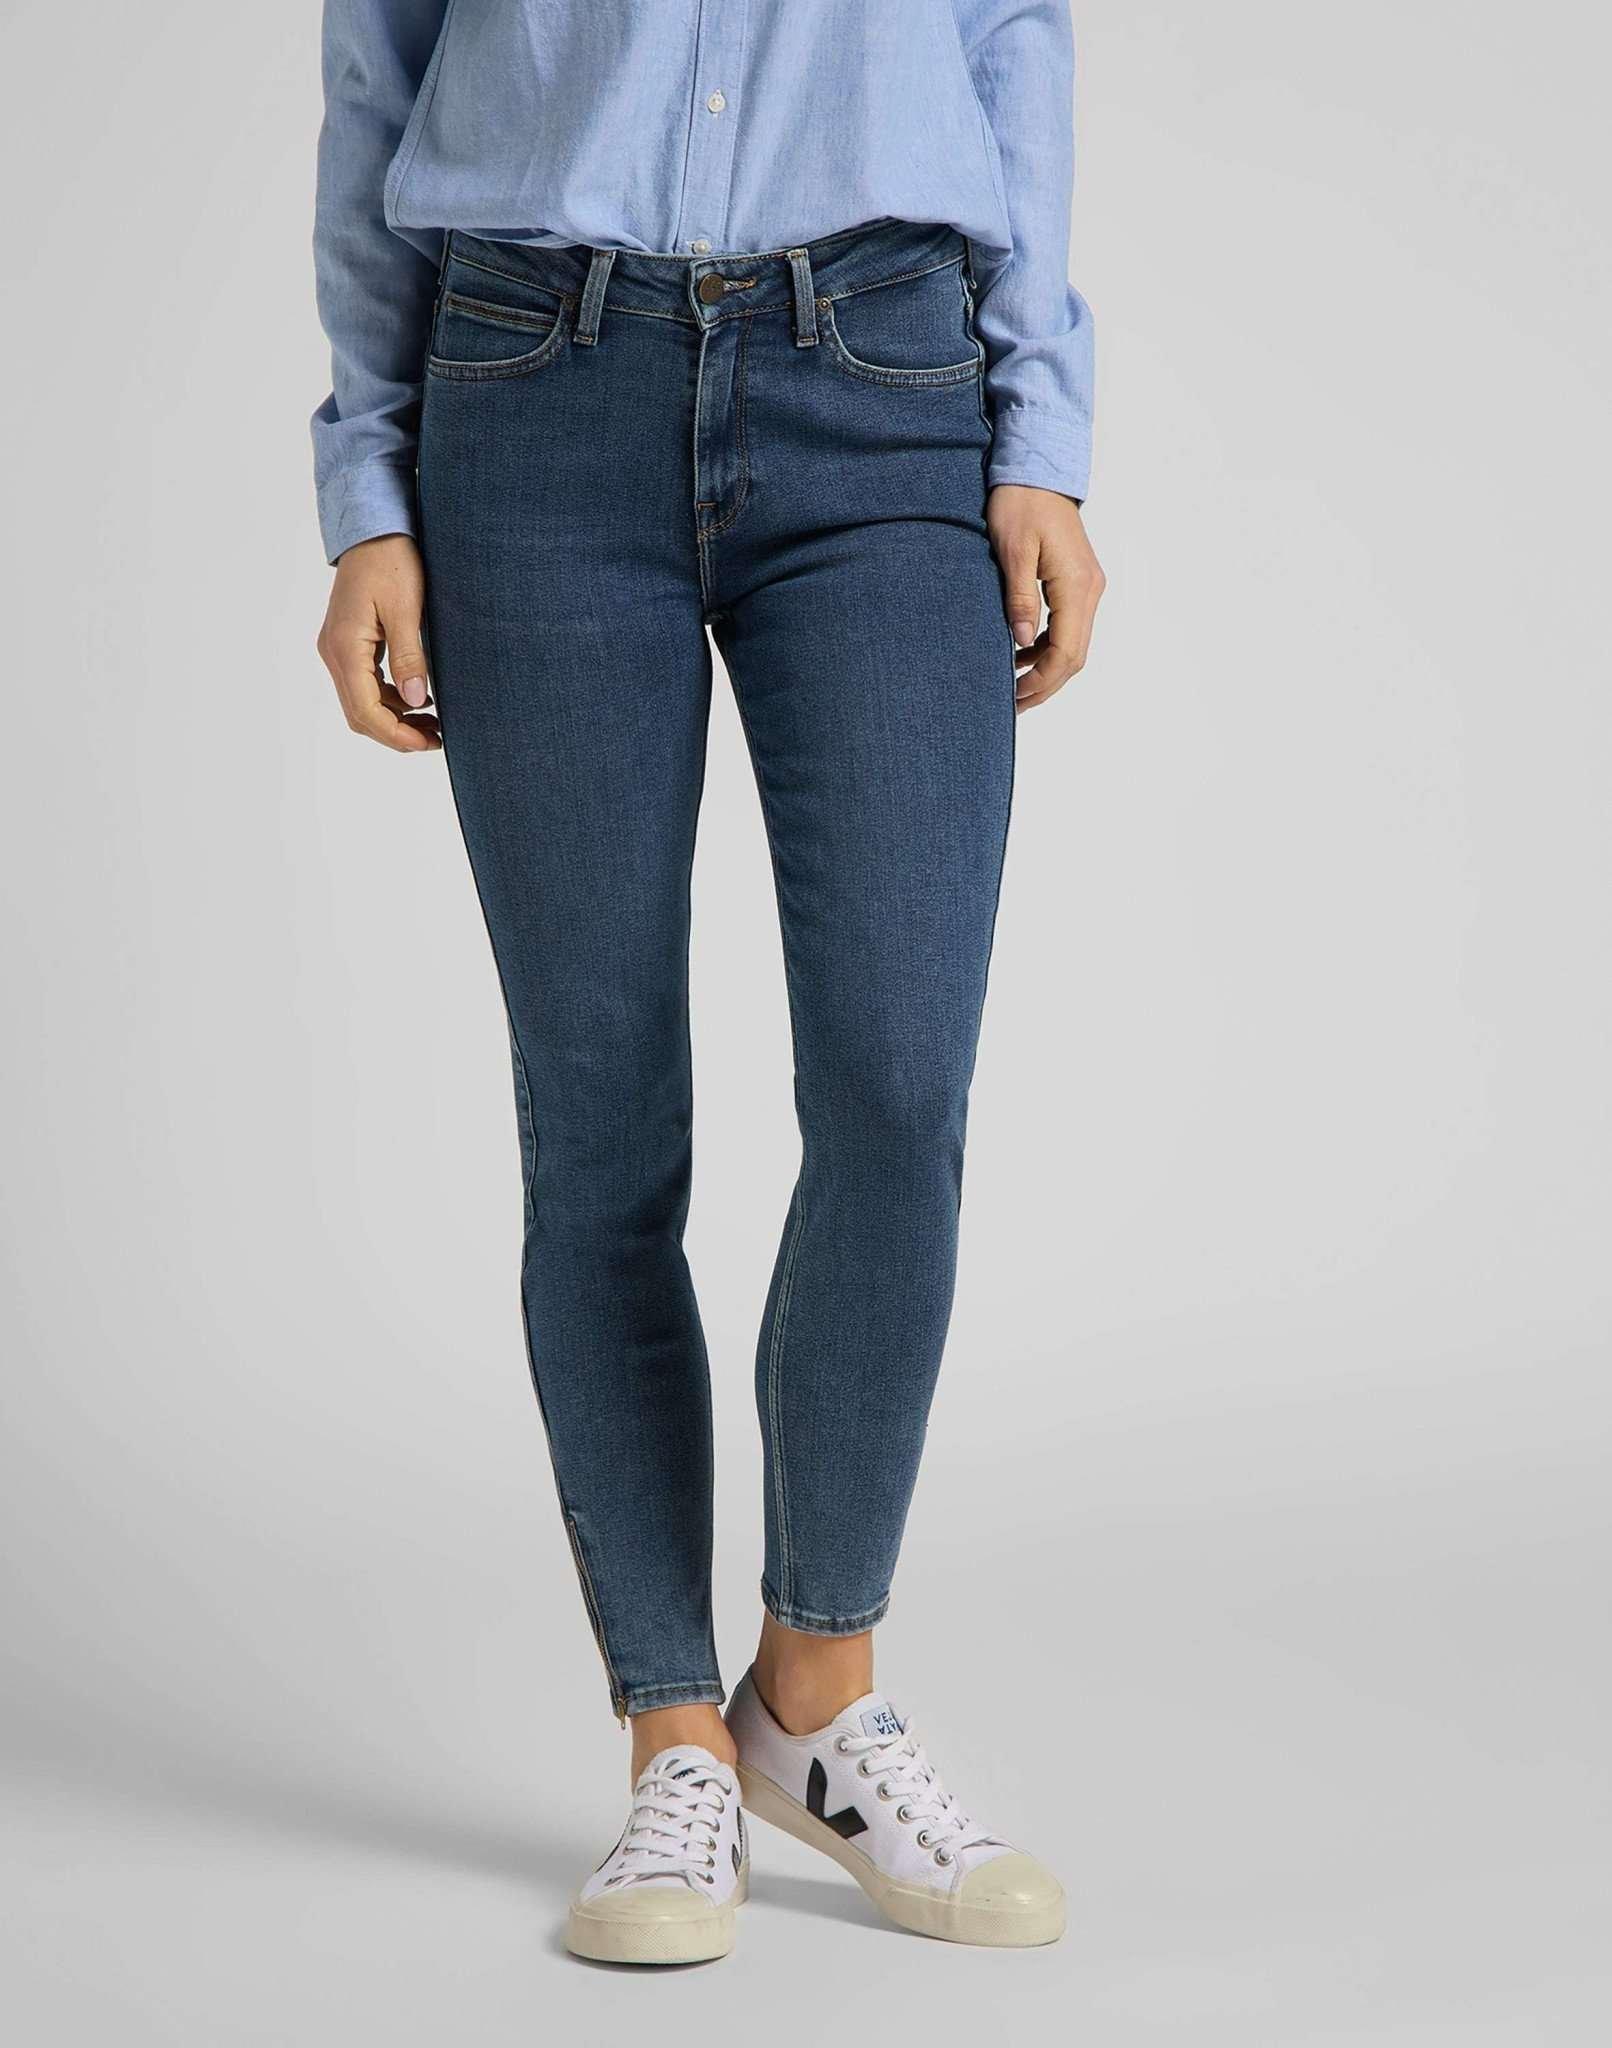 Jeans Skinny Fit Scarlett High Zip Damen Blau Denim W30 von Lee